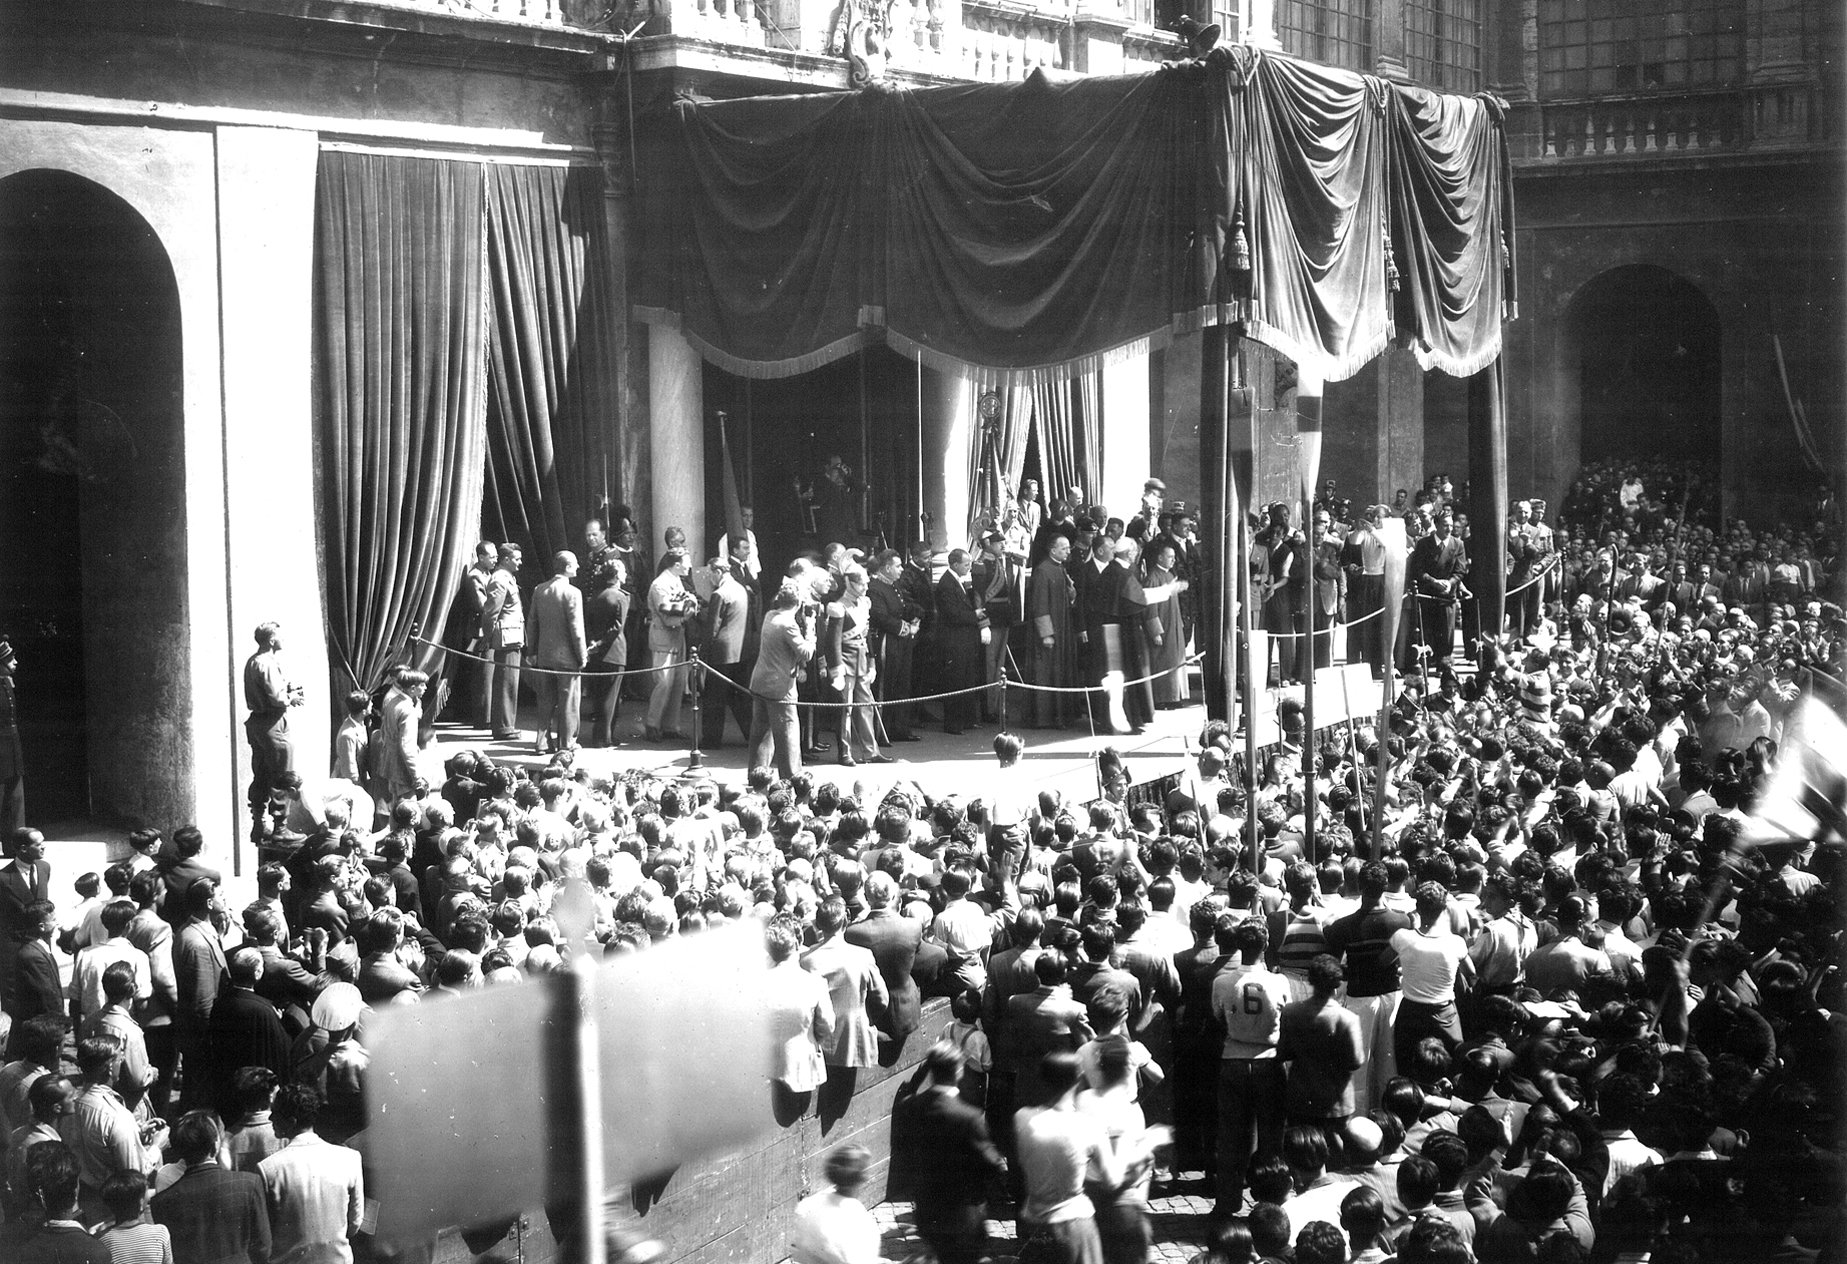 Foto d'epoca in bianco e nero. Un grande baldacchino al centro, con molte persone. Sotto, una grande folla radunata 